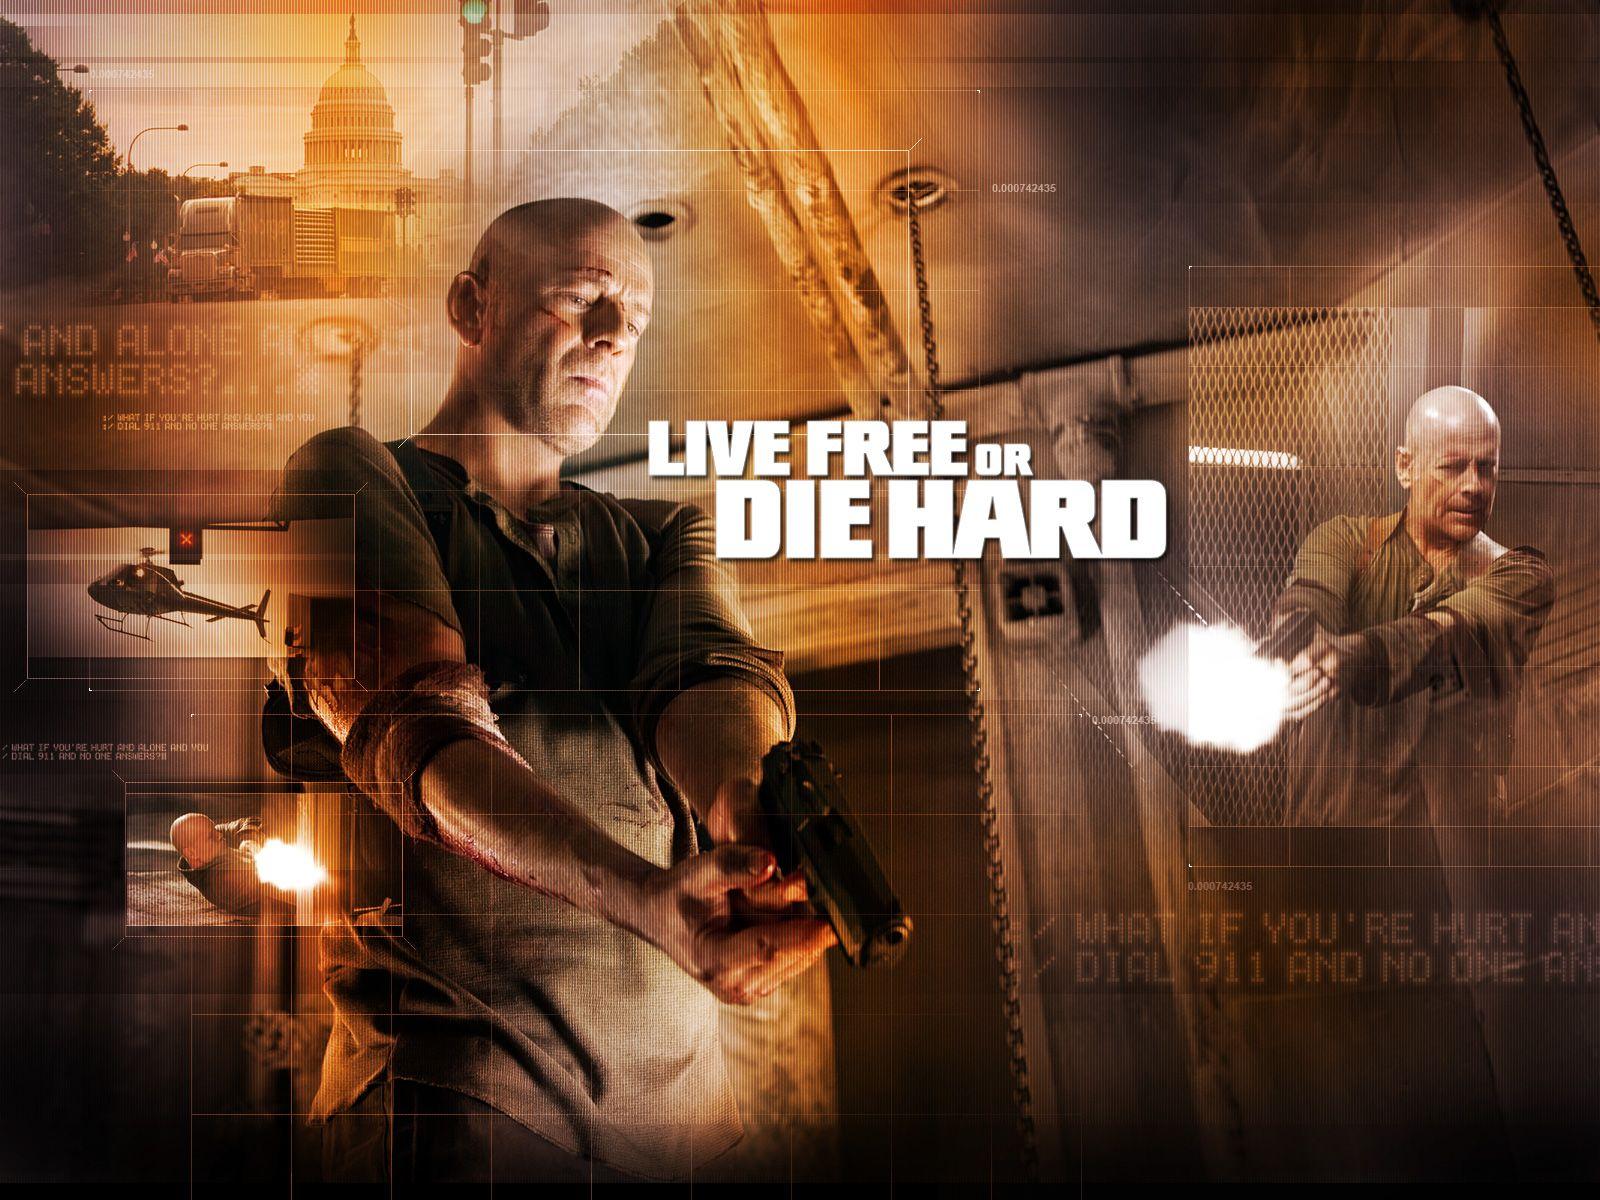 Die Hard HD Movie Wallpaper Free Download